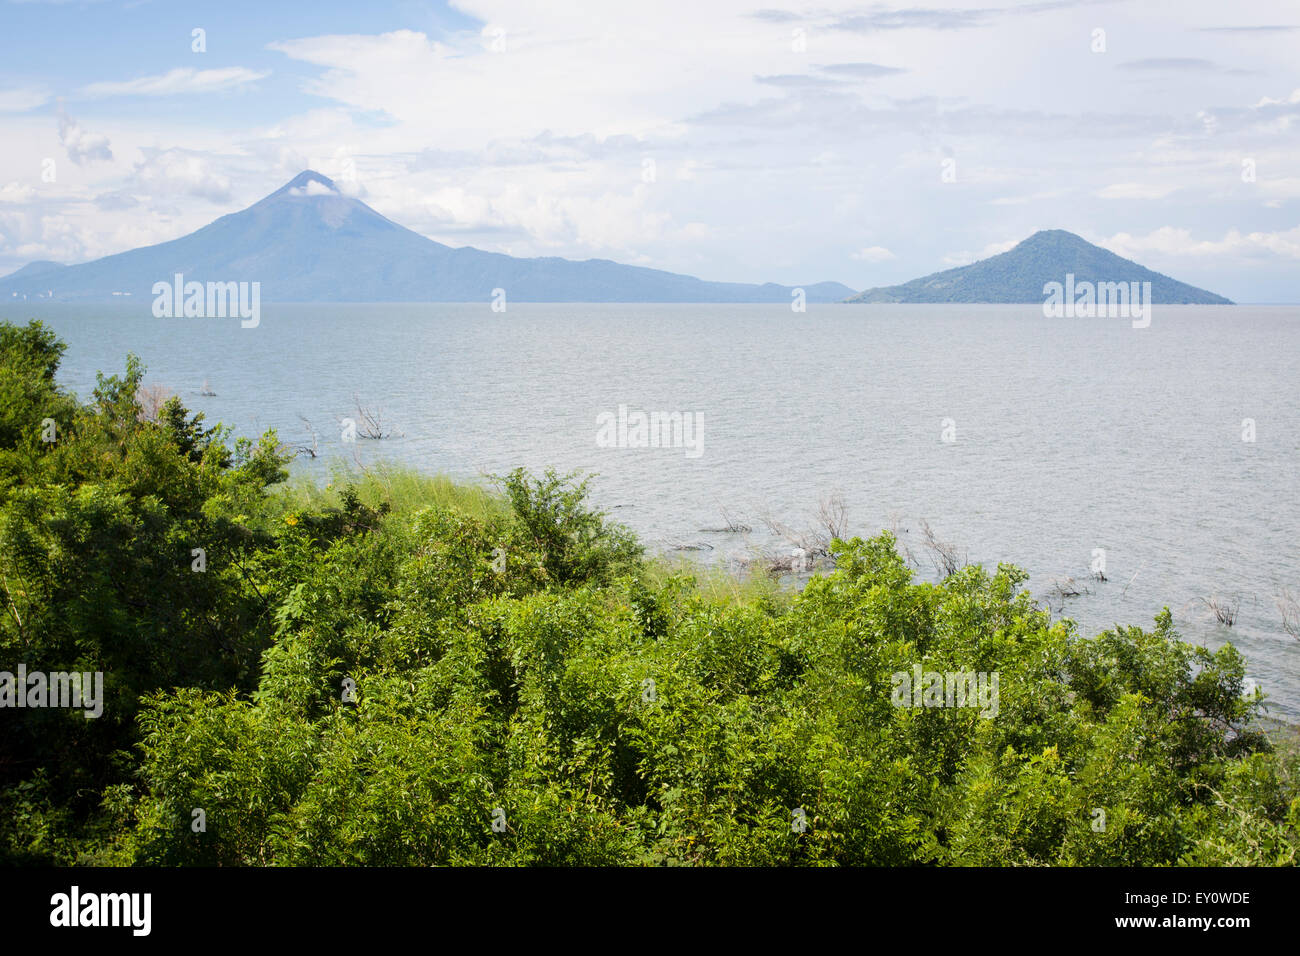 Momotombo and Momotombito volcanoes on the Managua lake, Nicaragua Stock Photo